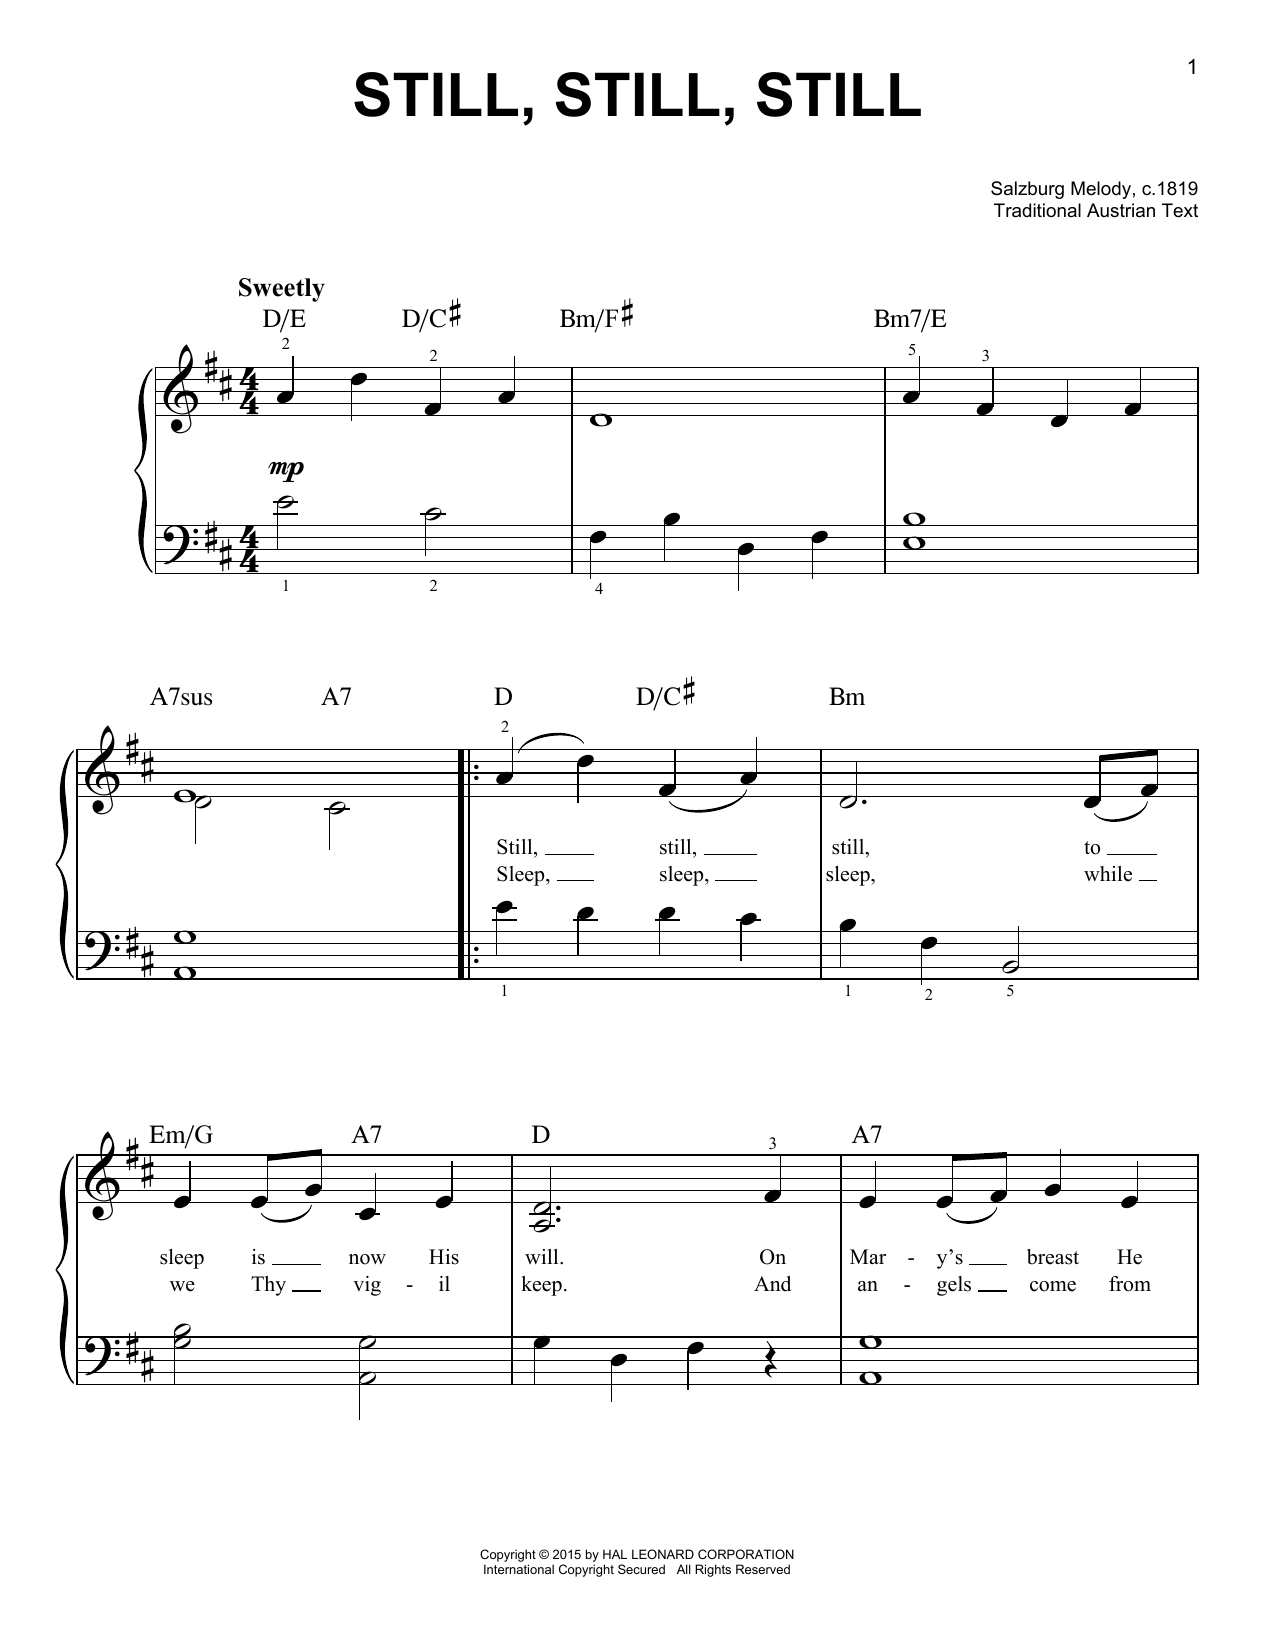 Traditional Still, Still, Still Sheet Music Notes & Chords for Trombone Transcription - Download or Print PDF